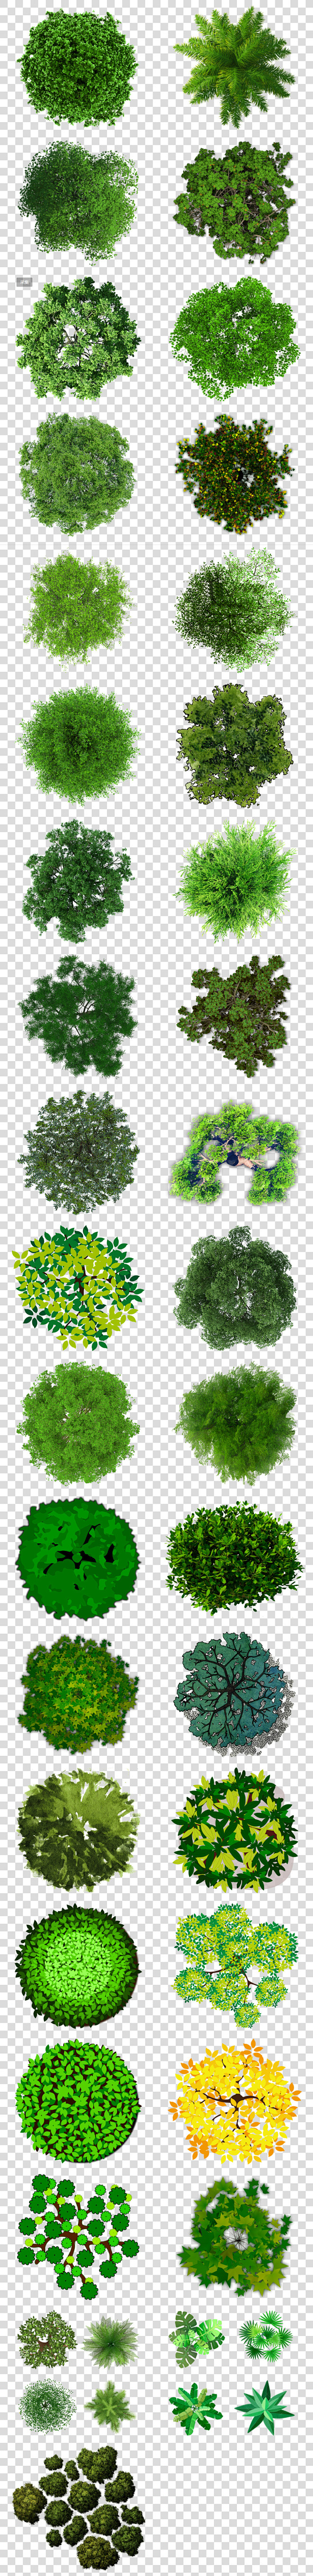 园林设计效果图植物树木顶视图png背景图...